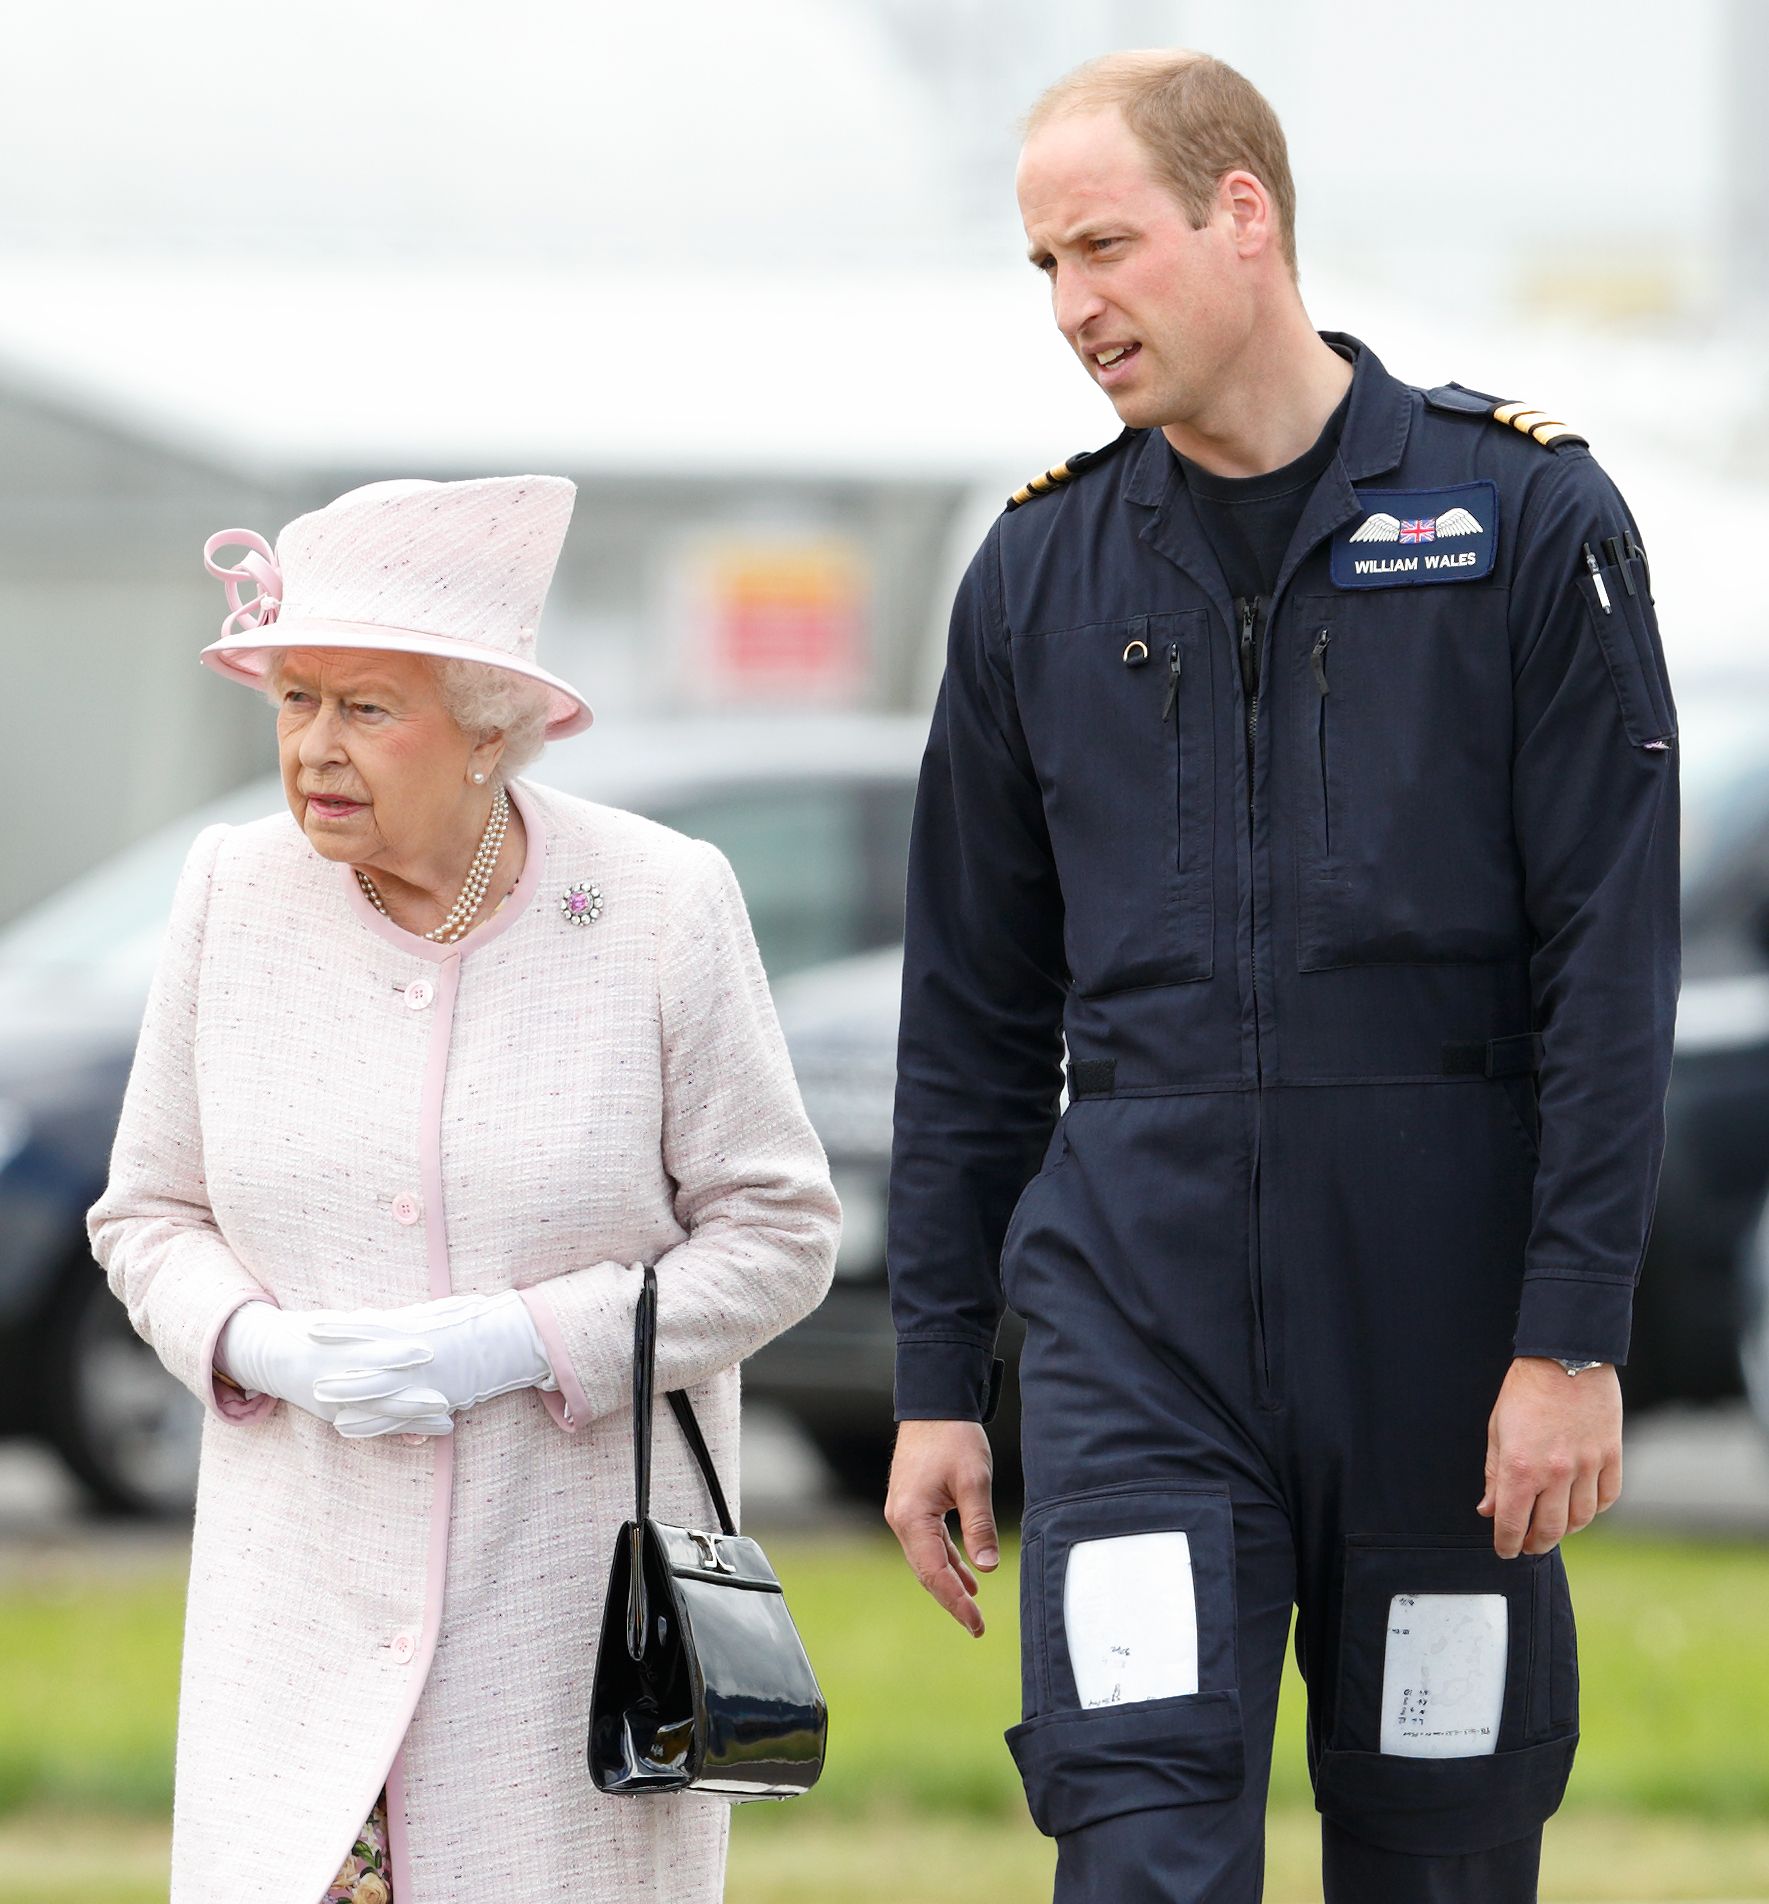 Le Prince William, fait visiter à sa grand-mère, la Reine Elizabeth II, le 13 juillet 2016 à Cambridge, en Angleterre.  | Photo : Getty Images